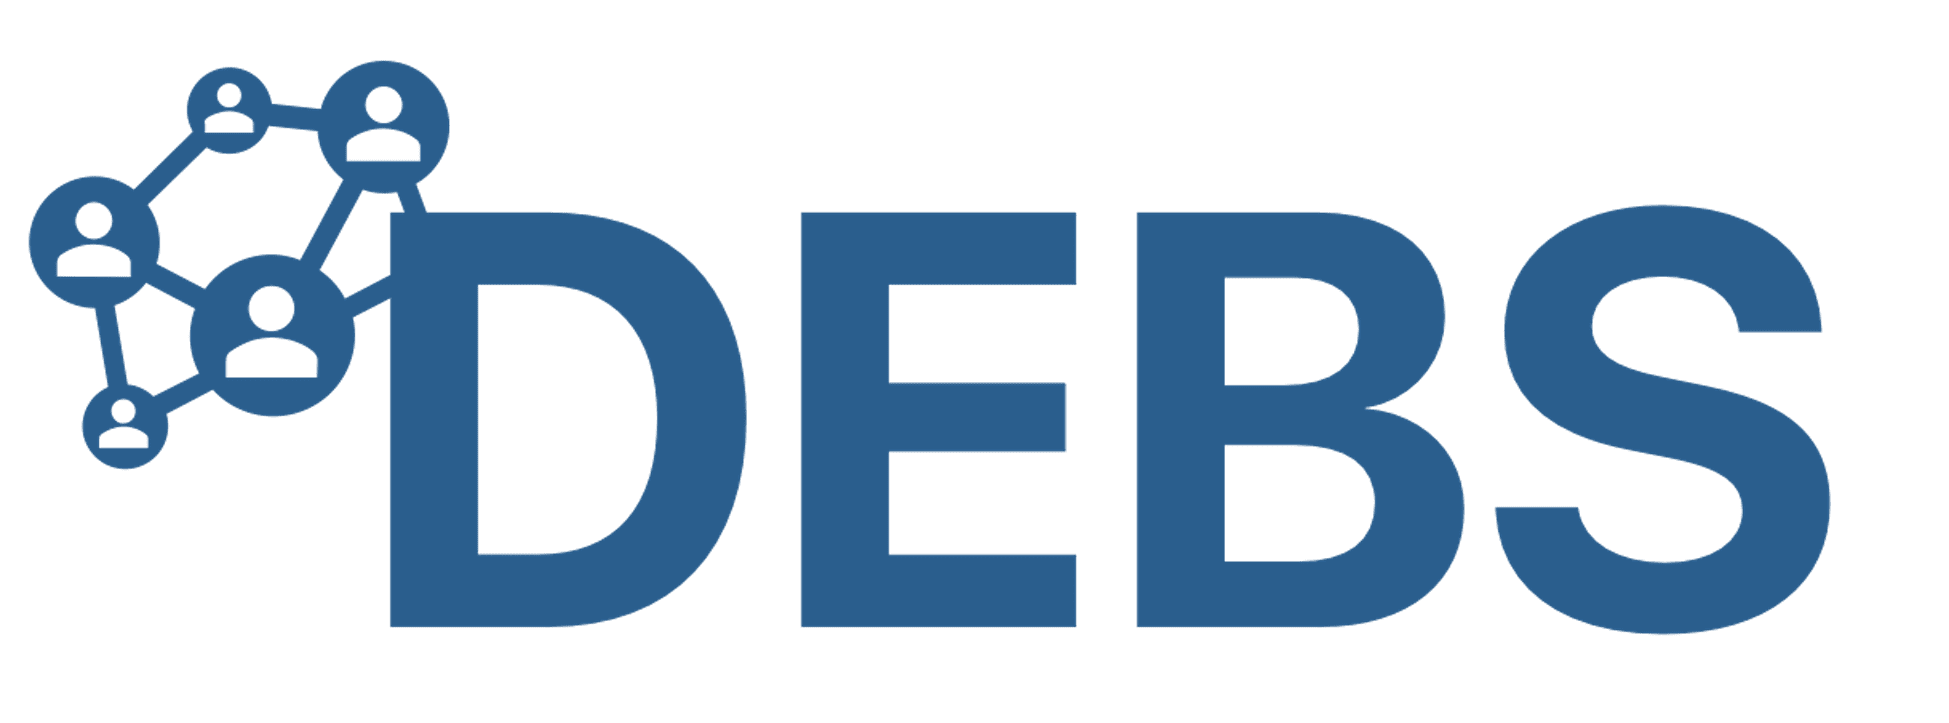 DEBS Business Games Platform